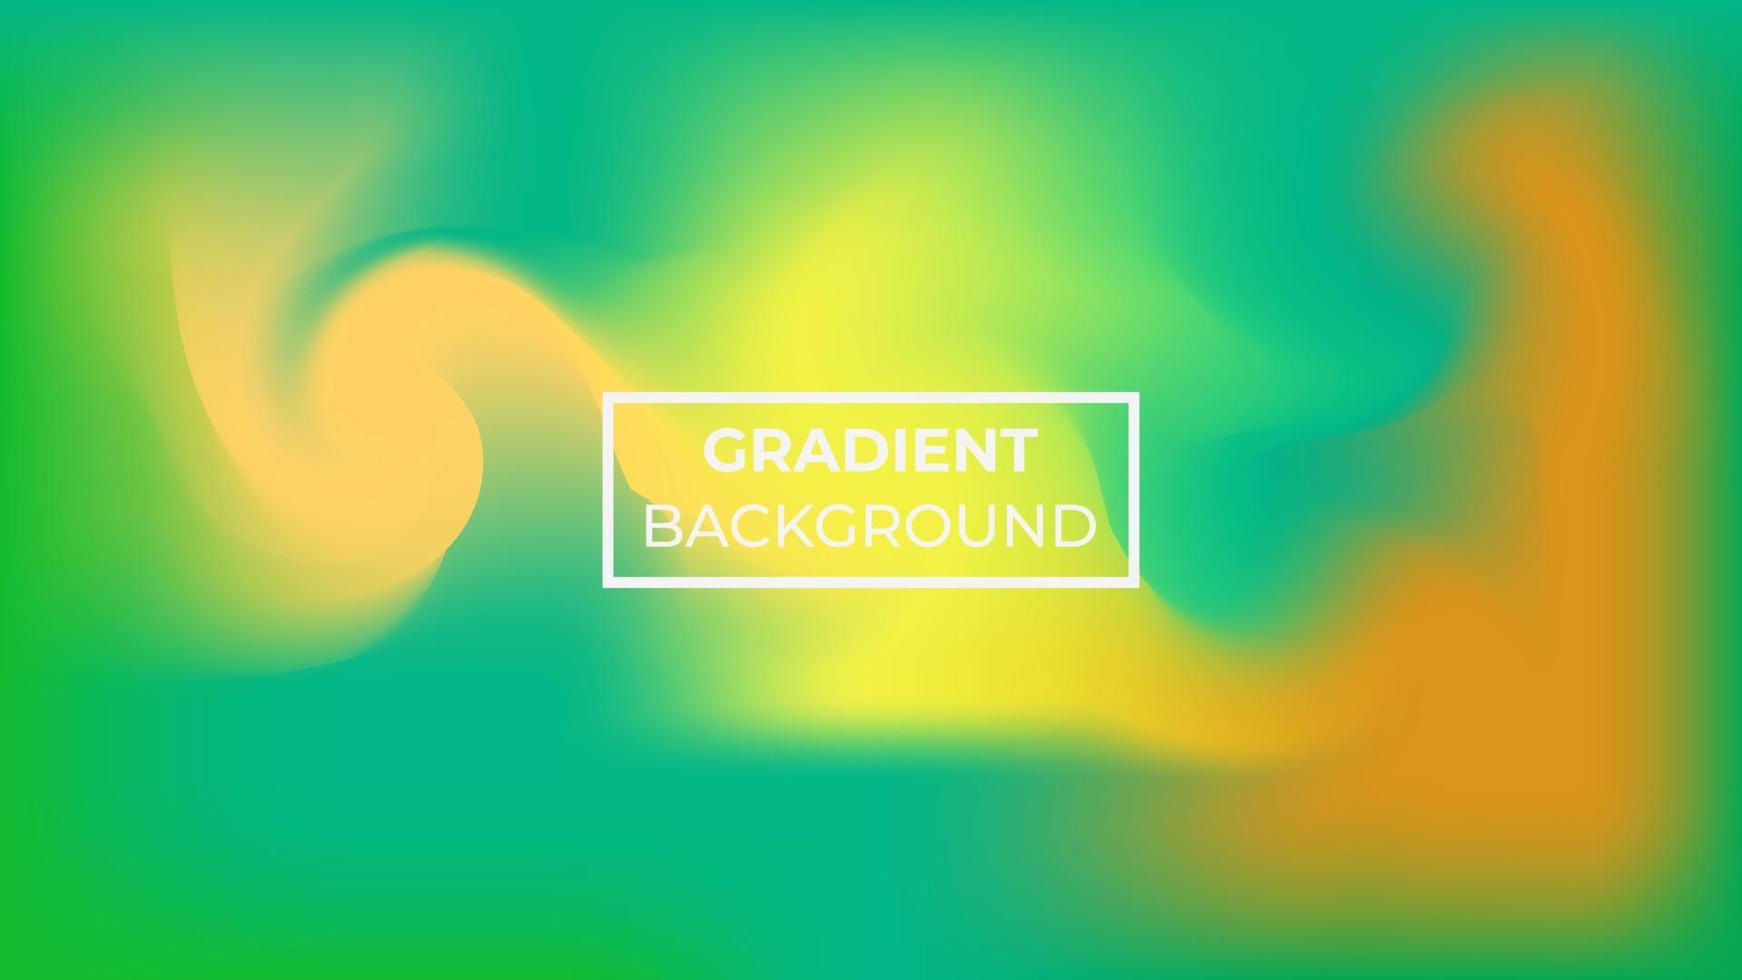 fondo abstracto con una mezcla de colores verde azulado, amarillo y naranja, fácil de editar vector